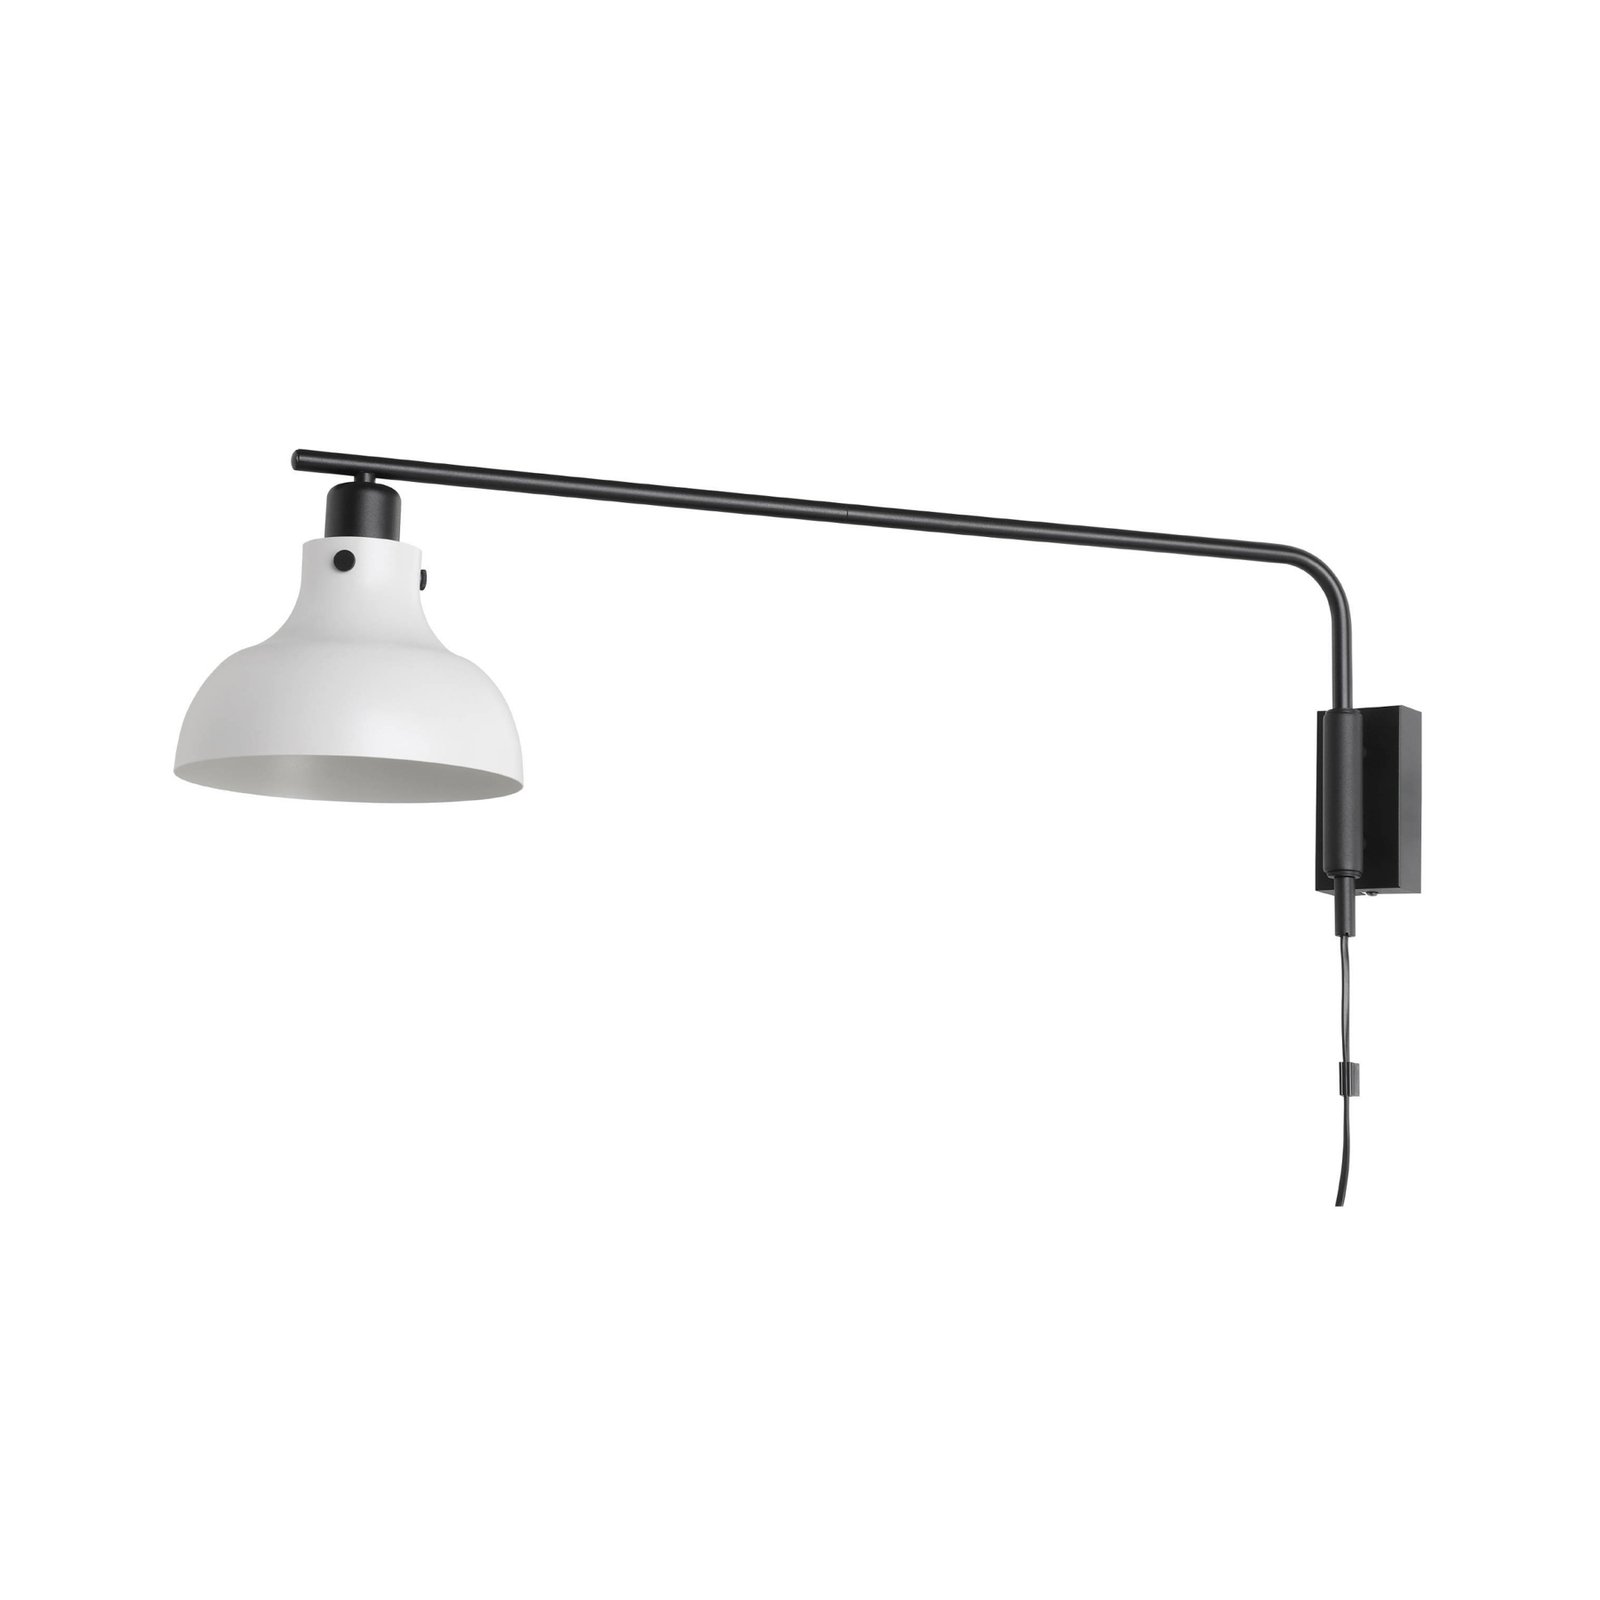 Matlock wandlamp, 80 cm projectie, grijs/zwart